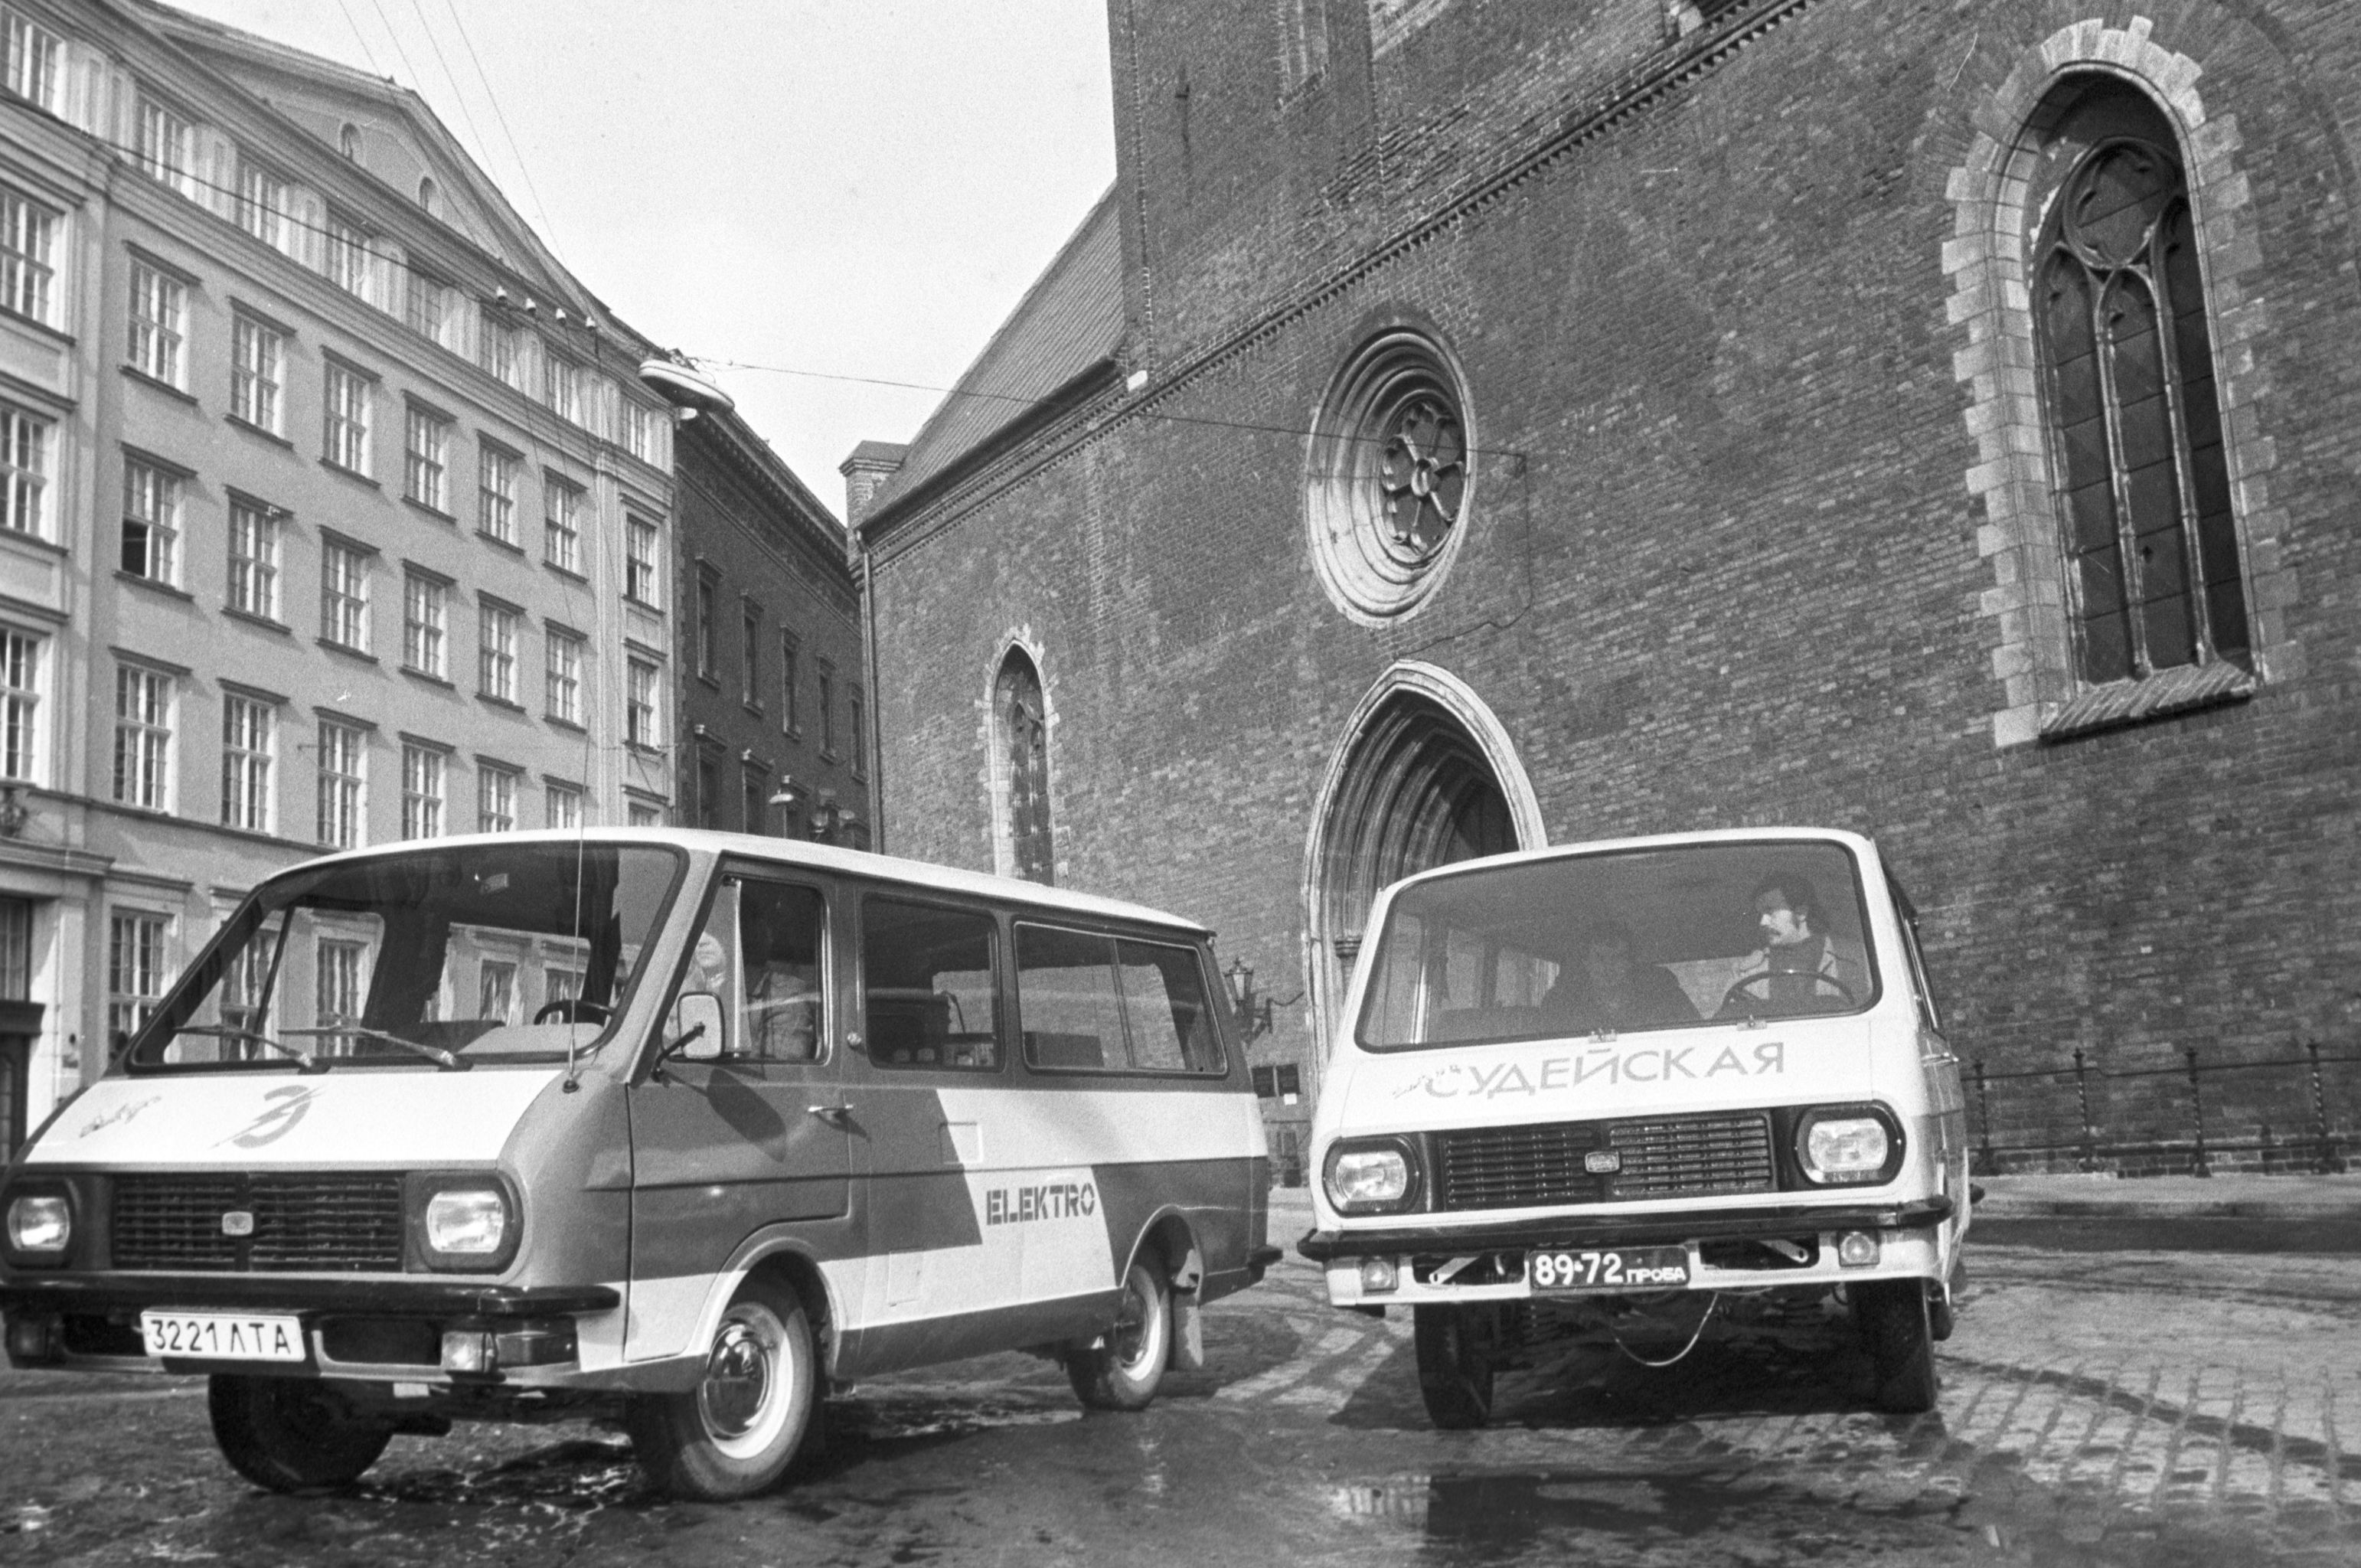 Электромикроавтобус (слева) производства Рижского опытного автобусного завода РАФ ("Ригас Аутобусу Фабрику" (Rigas Autobusu Fabriku, RAF) на улице столицы Латвийская ССР